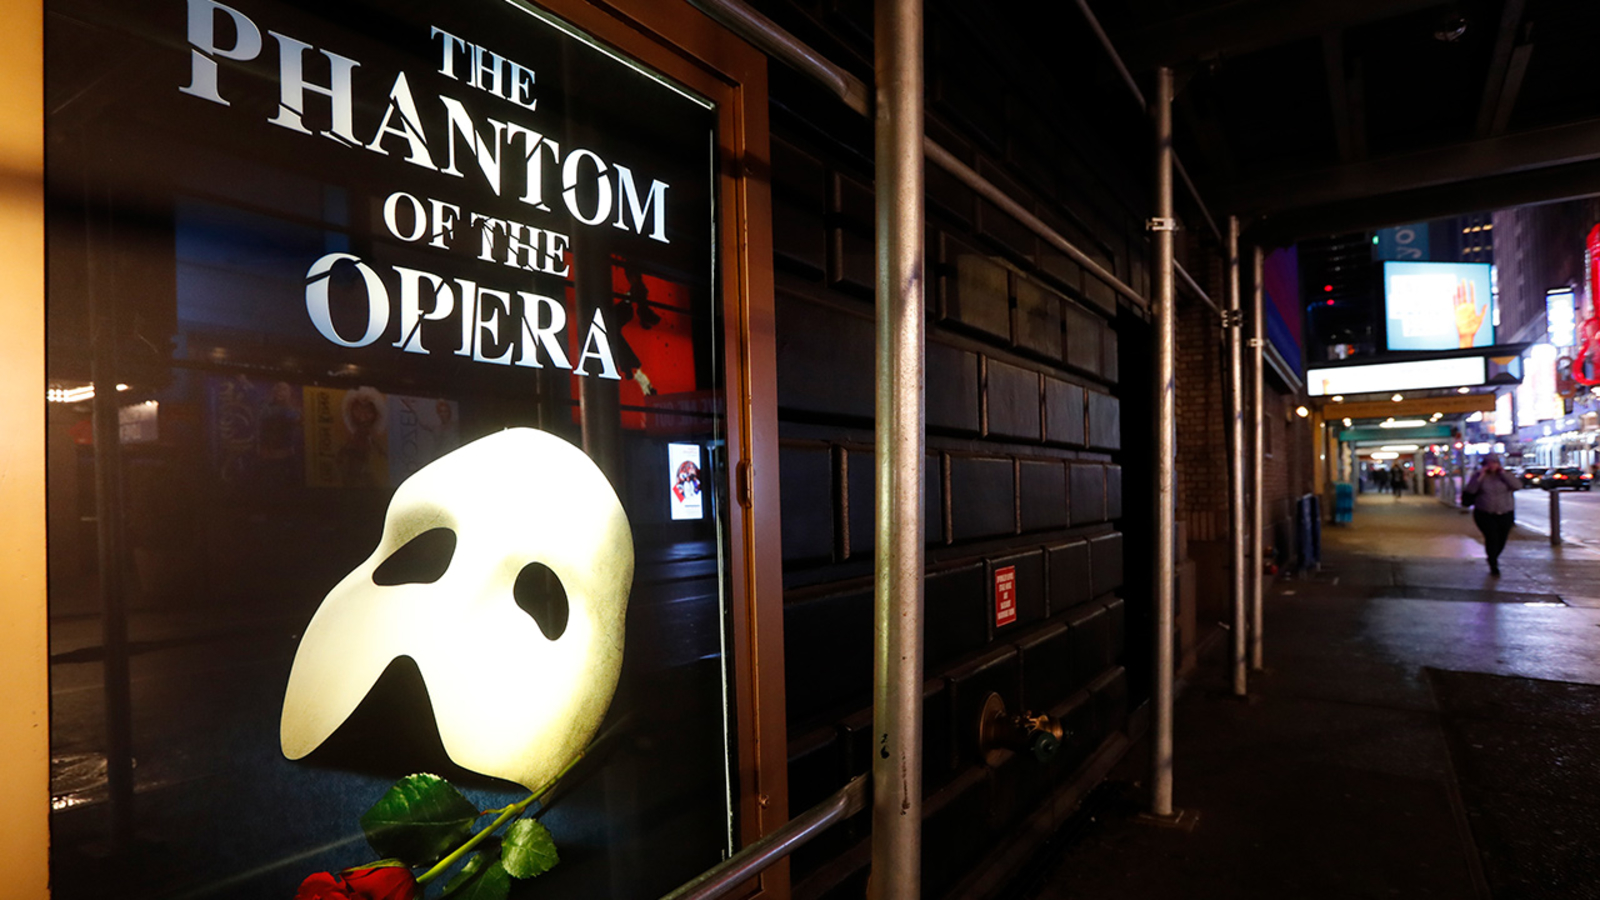 El espectáculo de mayor duración de Broadway, "El Fantasma de la Ópera", concluirá en 2023